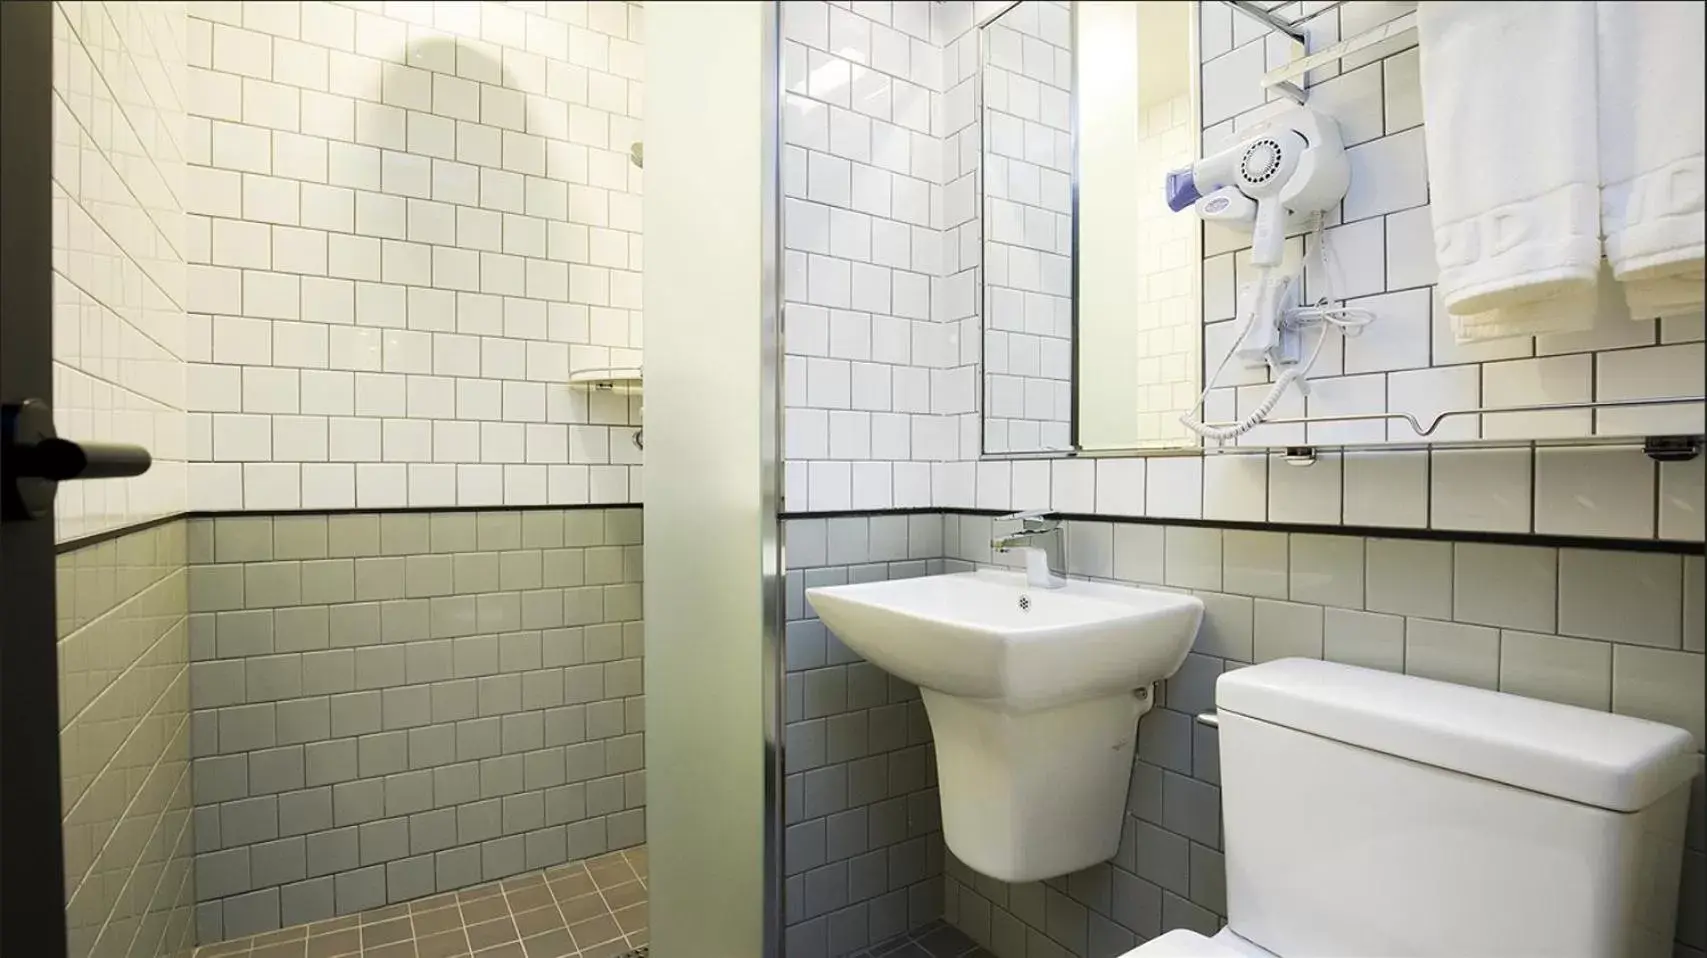 Toilet, Bathroom in Grid Inn Hotel